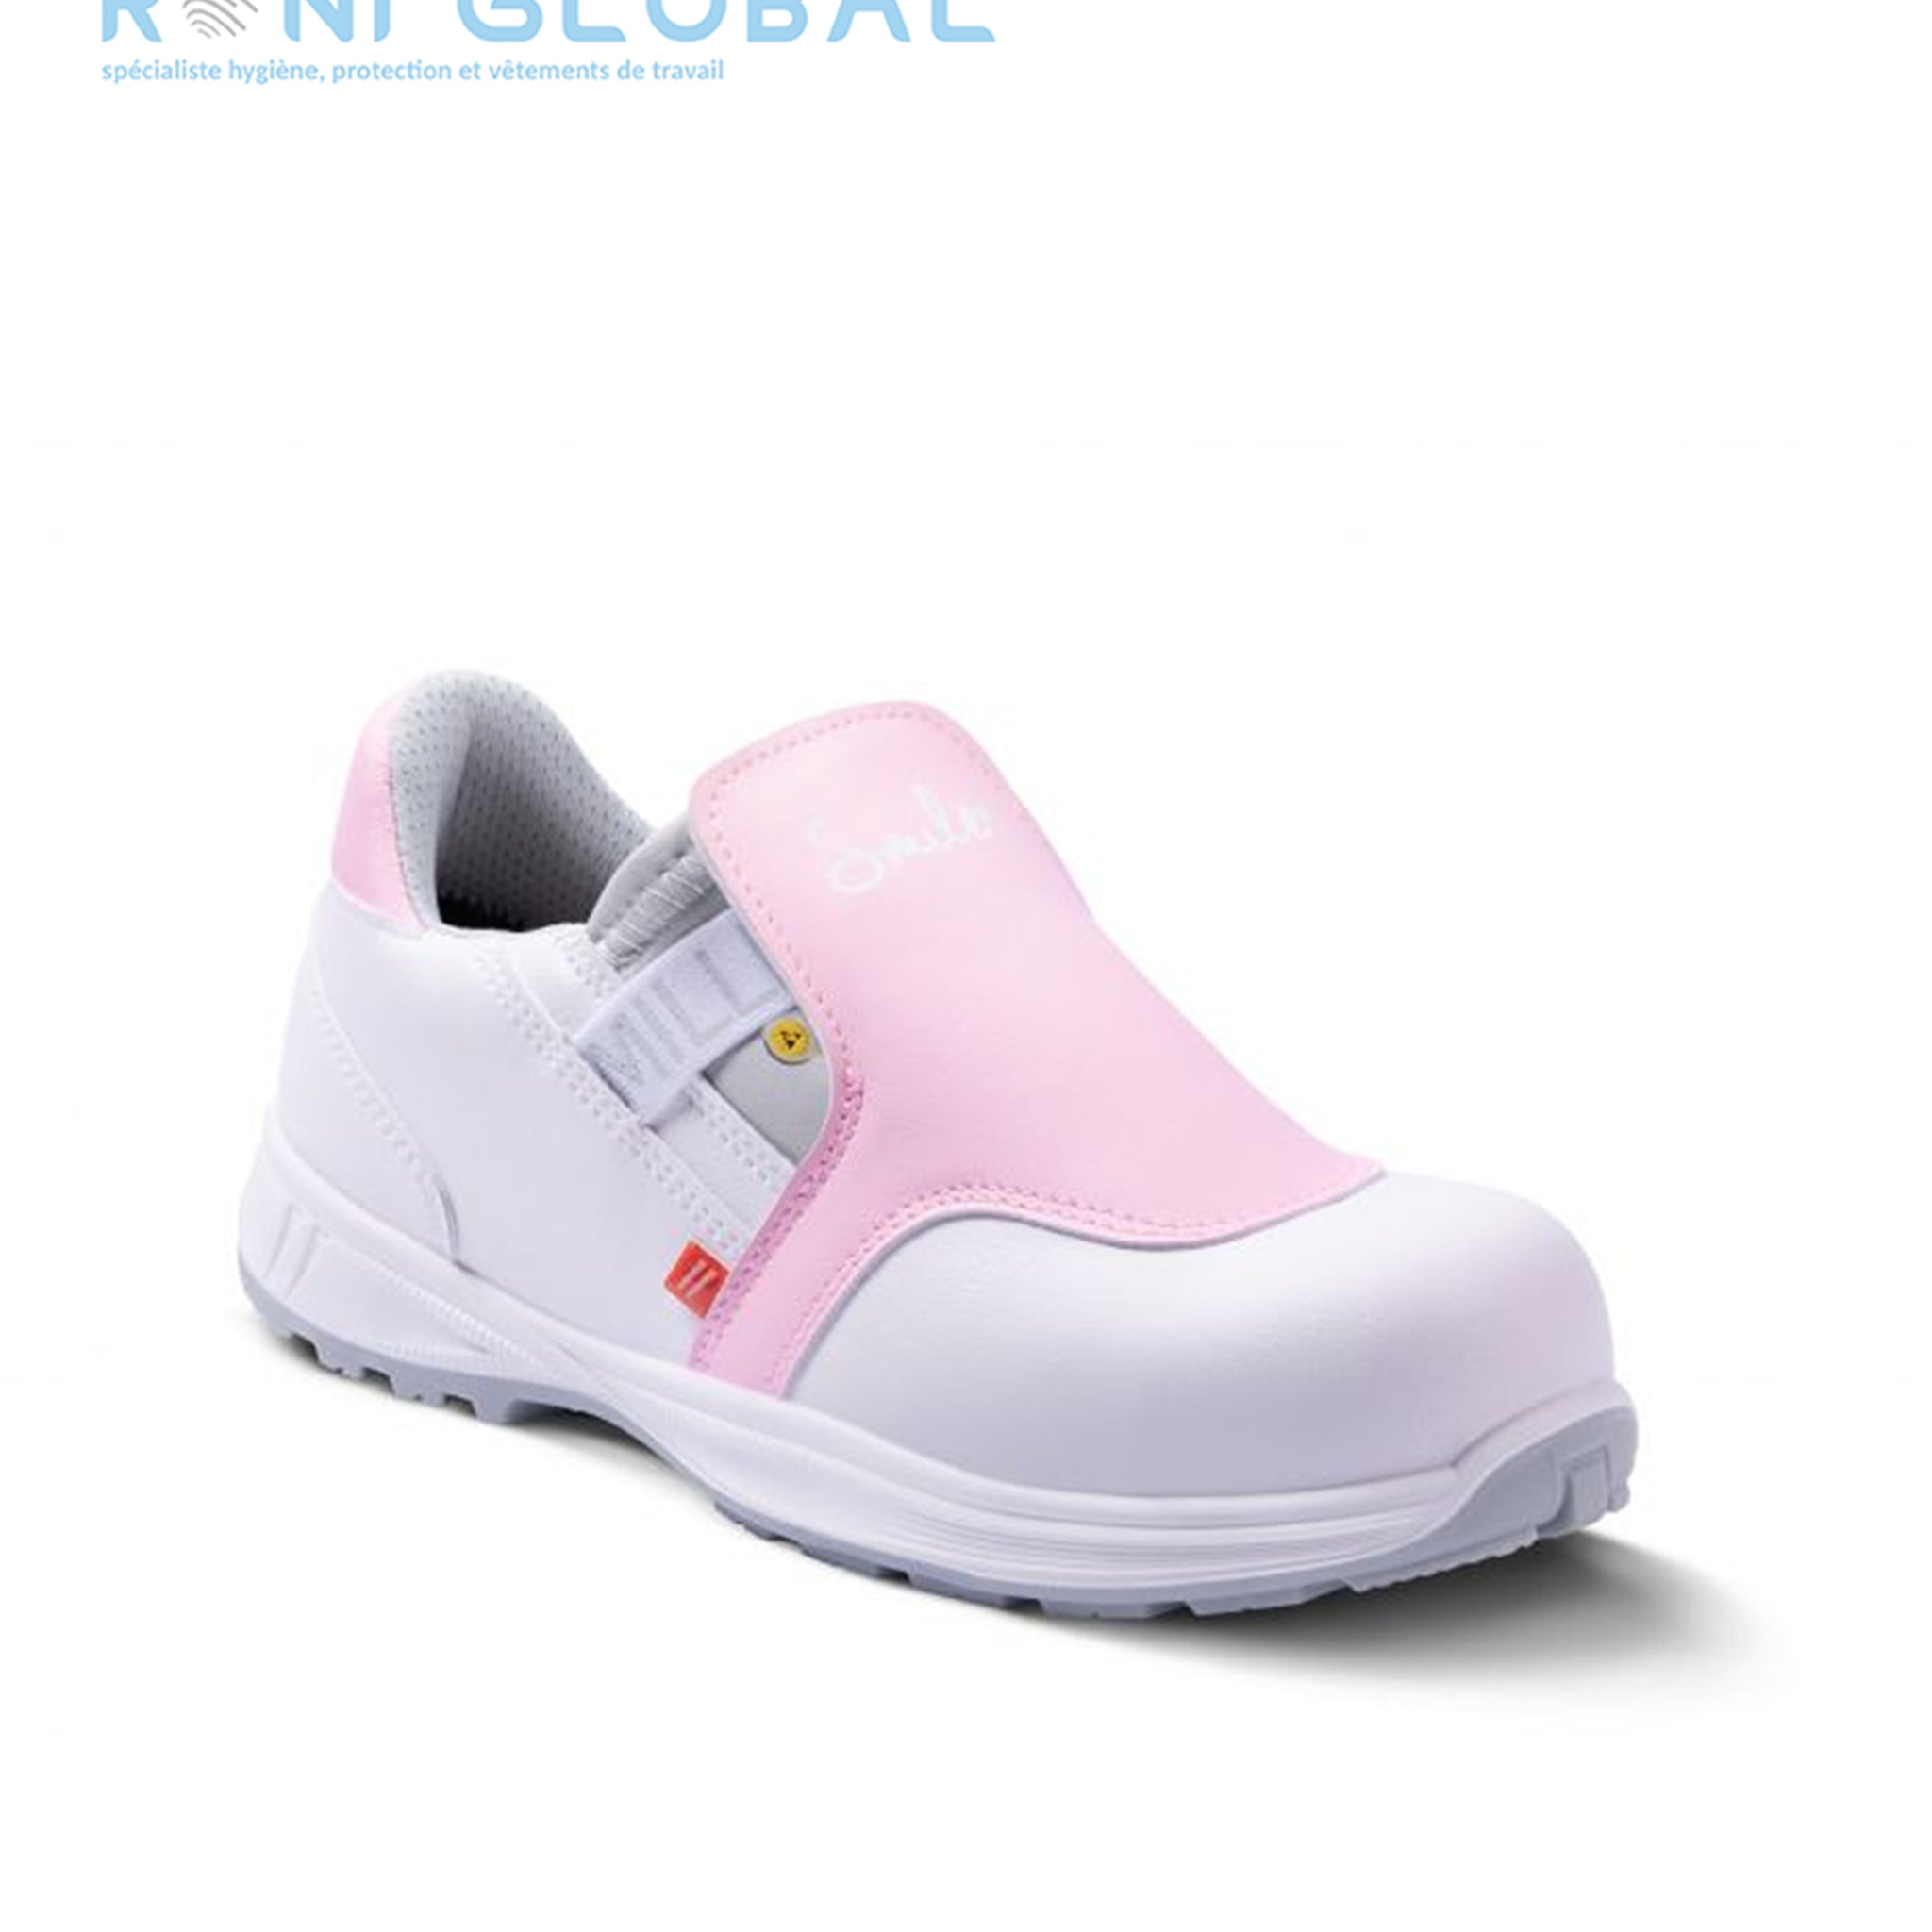 Chaussure basse de sécurité femme antidérapant et antistatique, en microfibre lavable avec embout de sécurité S2 SRA ESD - MOON LADY GASTON MILLE